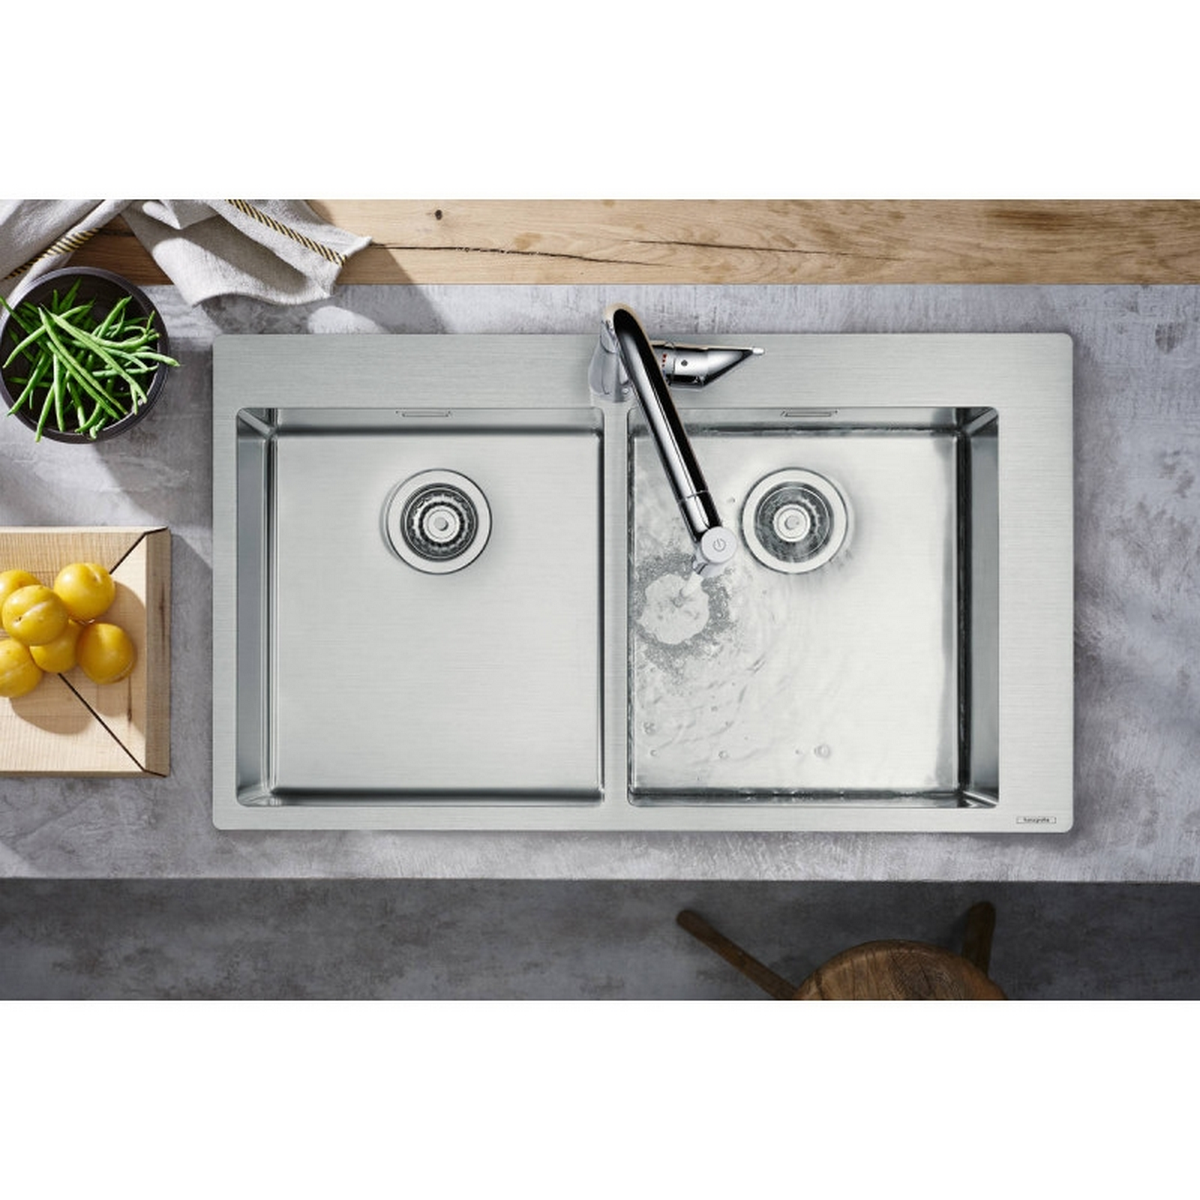 Кухонная мойка Hansgrohe S71 S711-F765 43303800 в интернет-магазине, главное фото